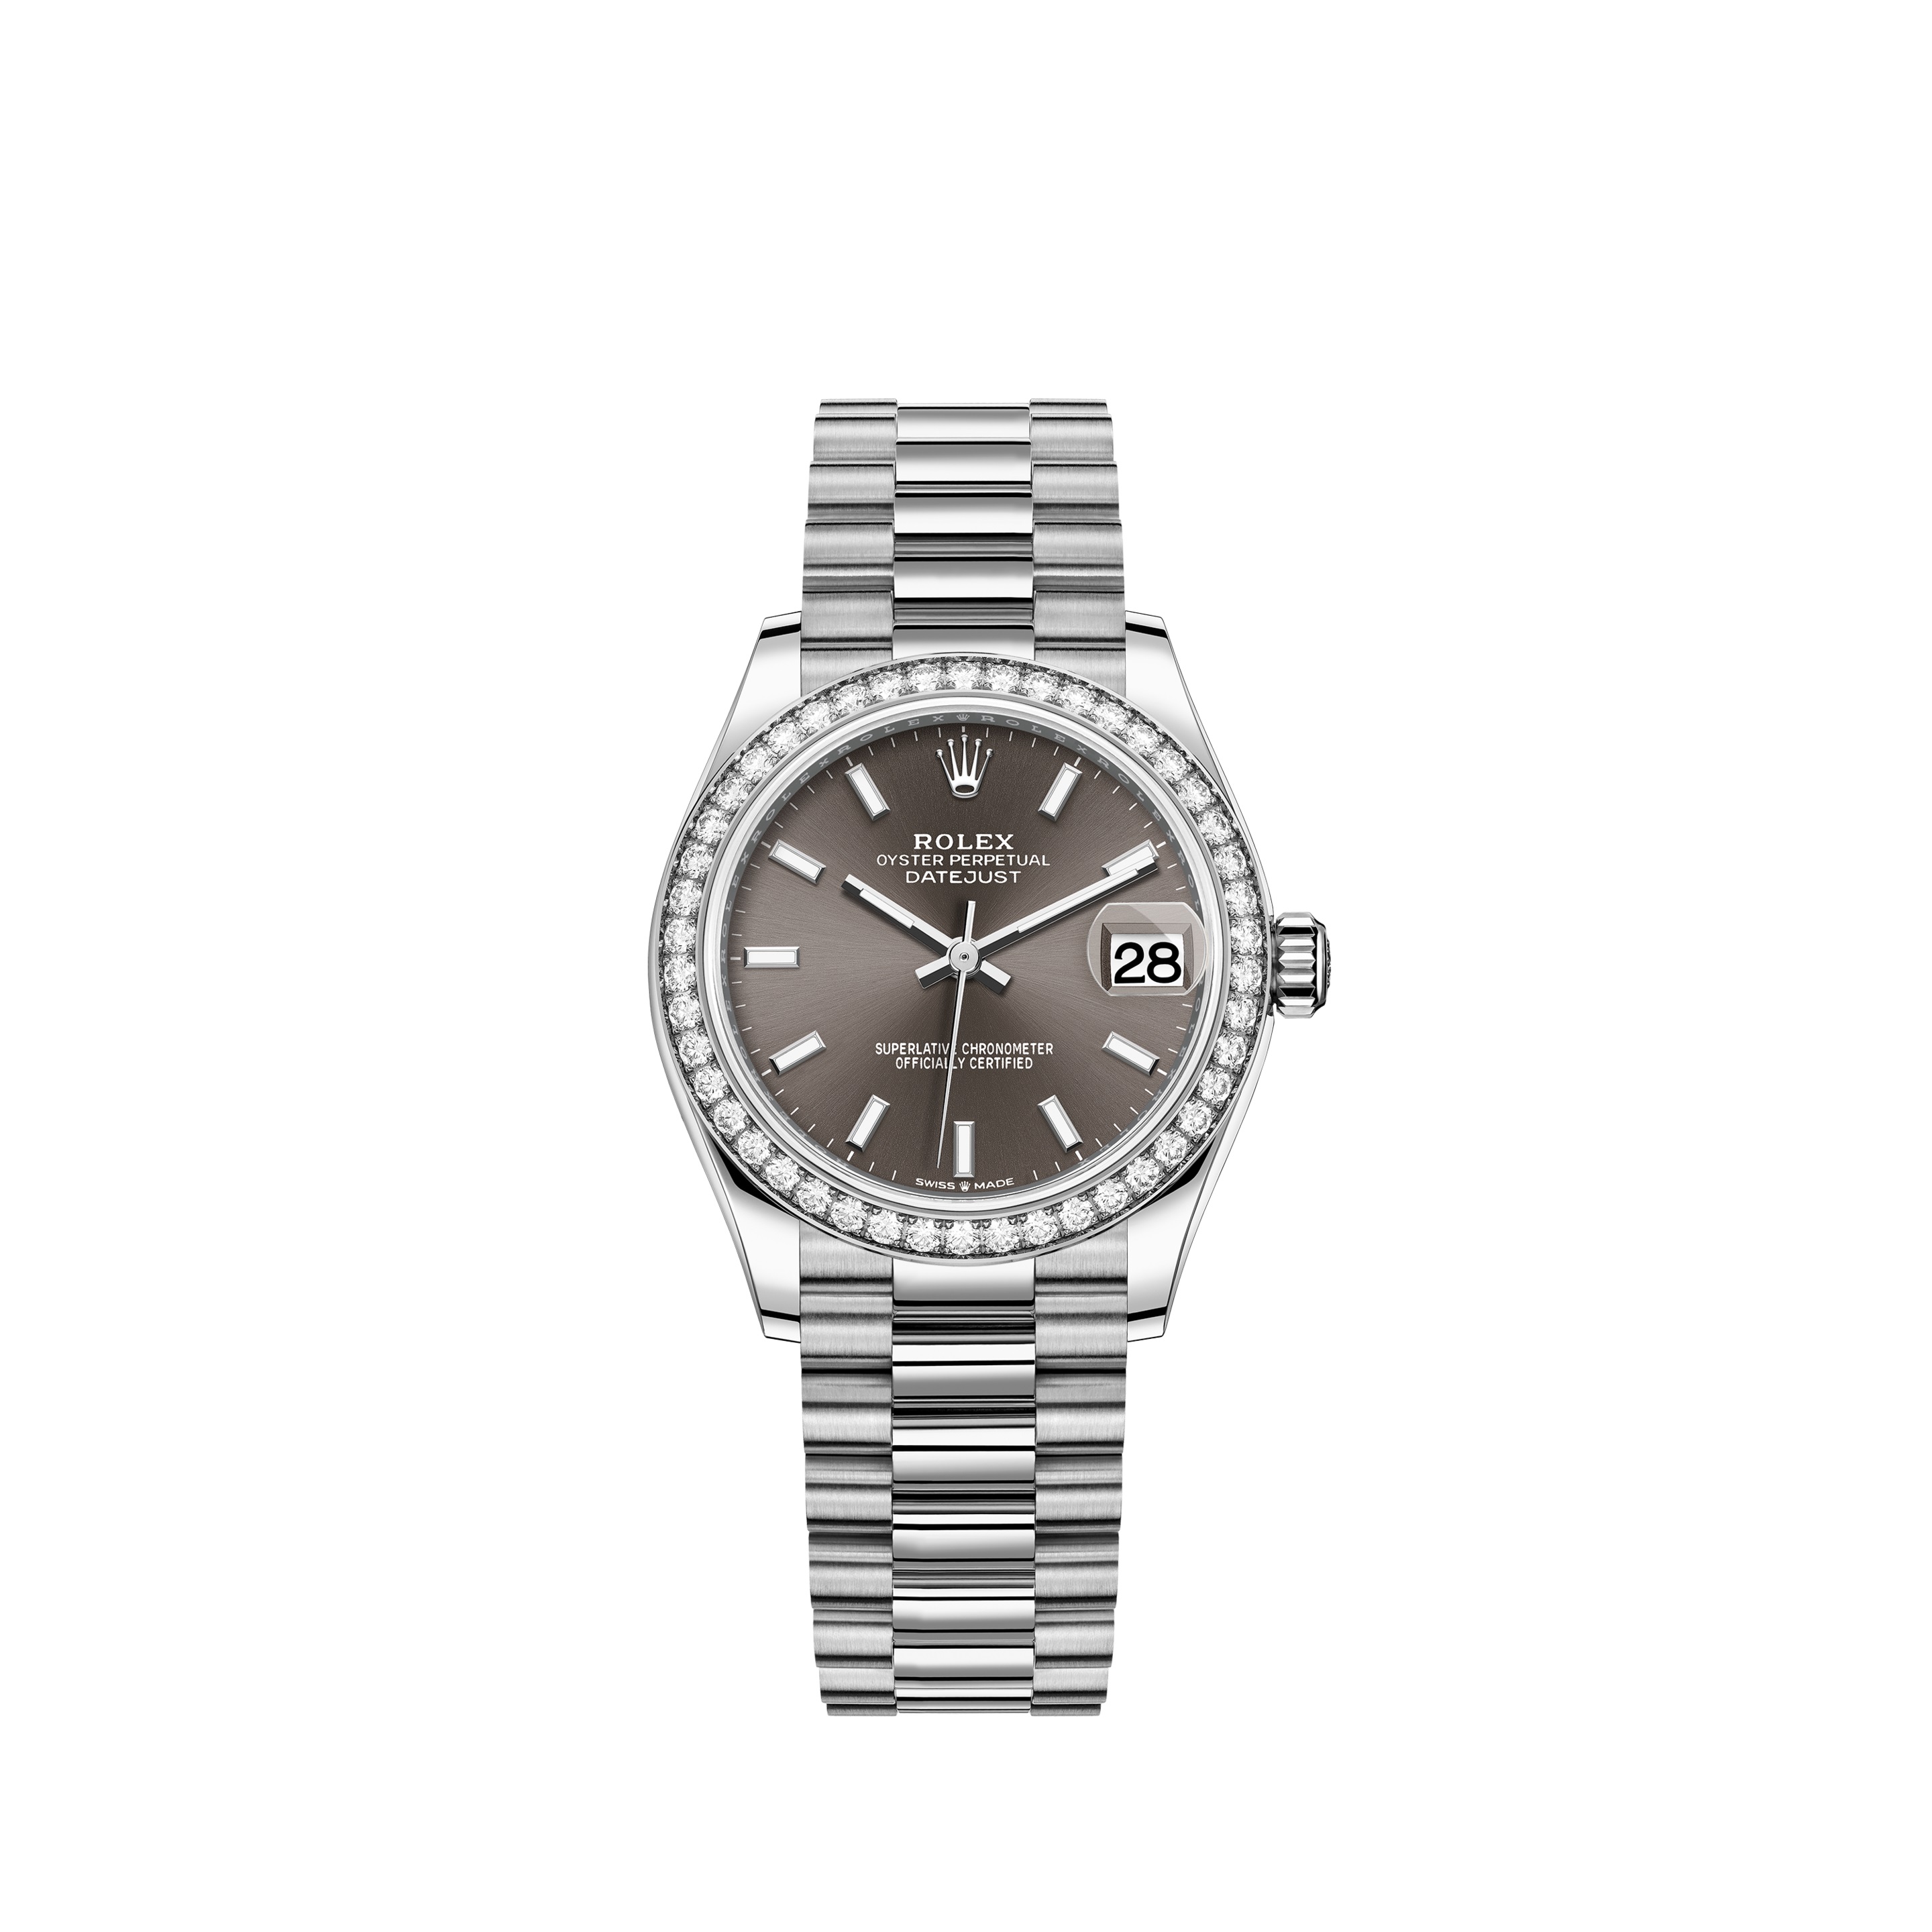 Datejust 31 278289RBR White Gold Watch (Dark Grey)